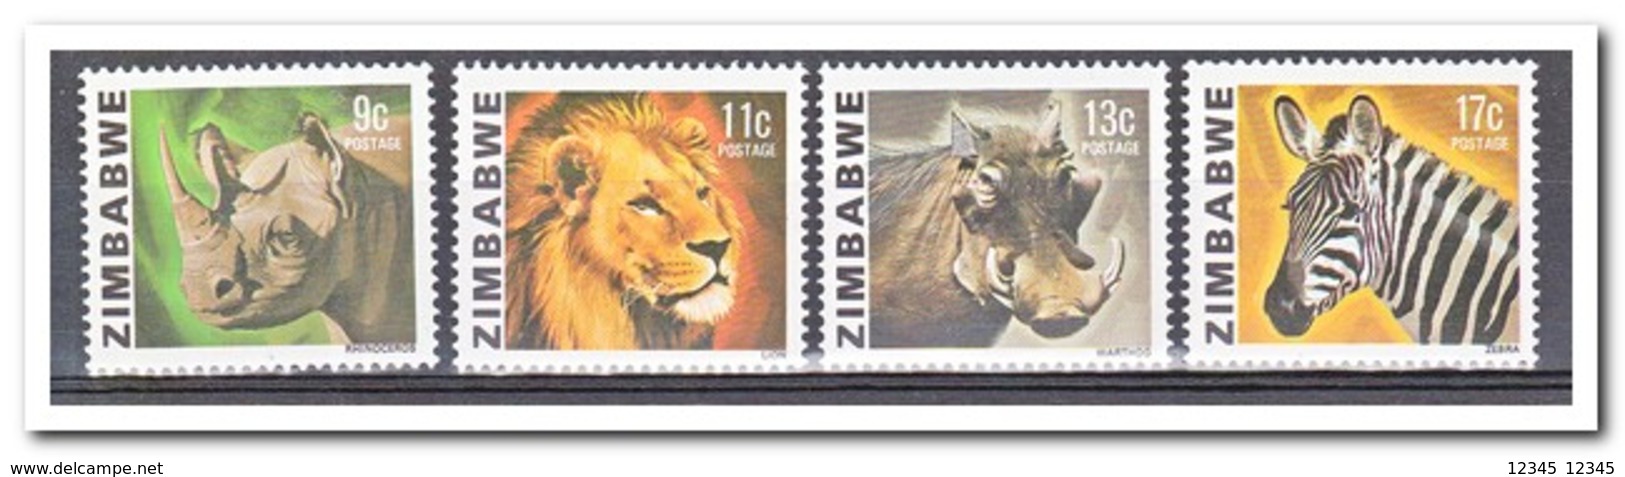 Zimbabwe 1980, Postfris MNH, Animals - Zimbabwe (1980-...)